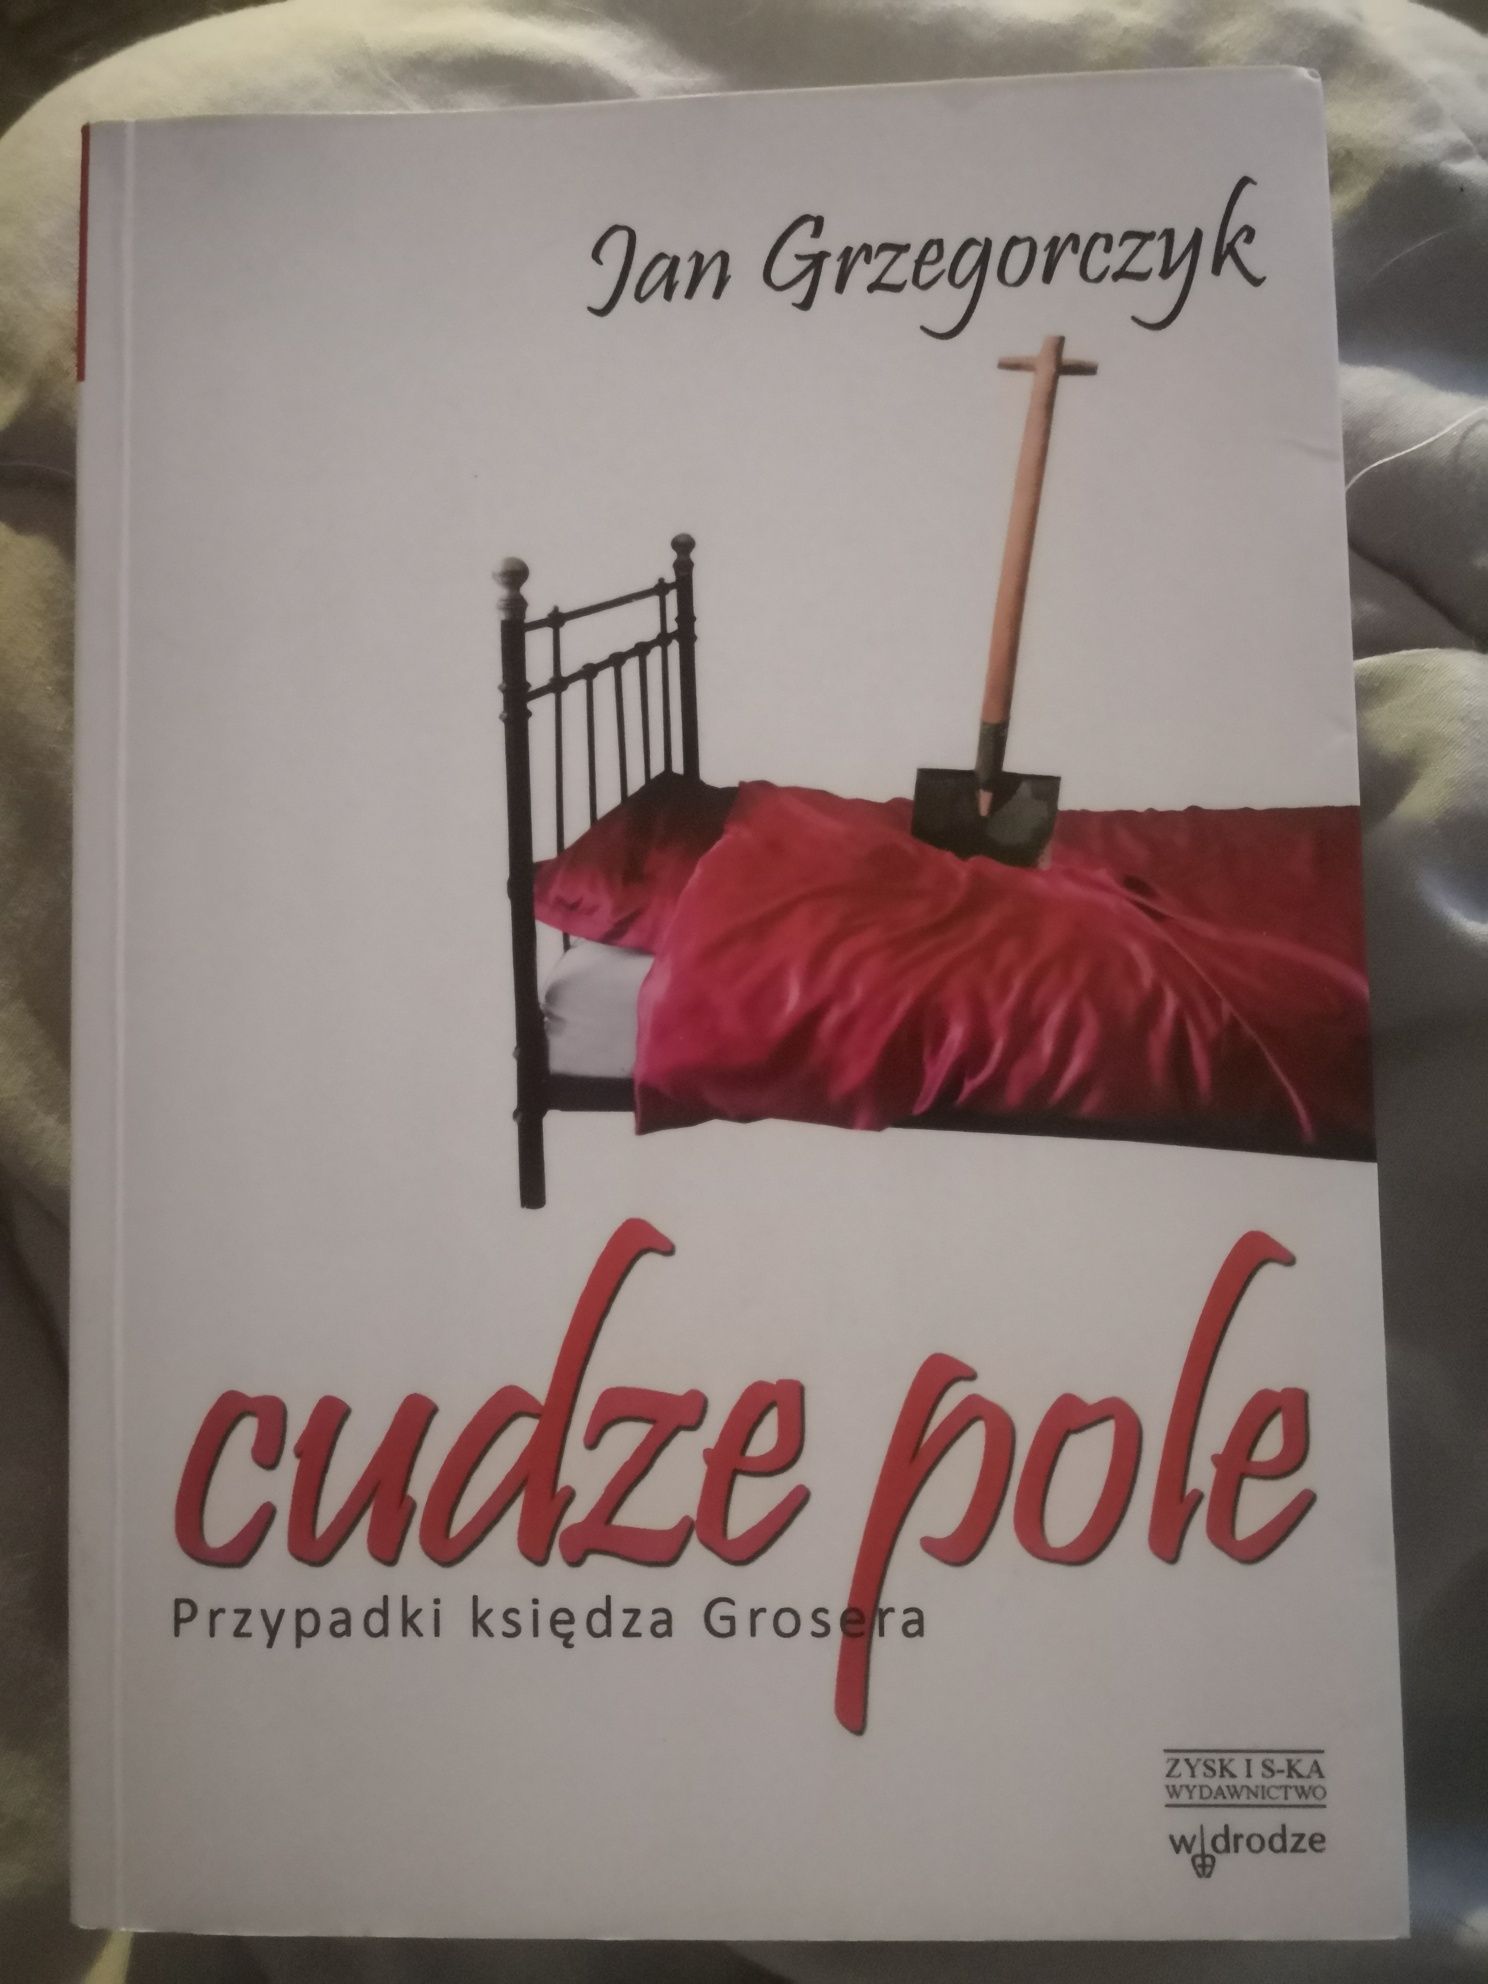 Jan Grzegorczyk - Cudze pole